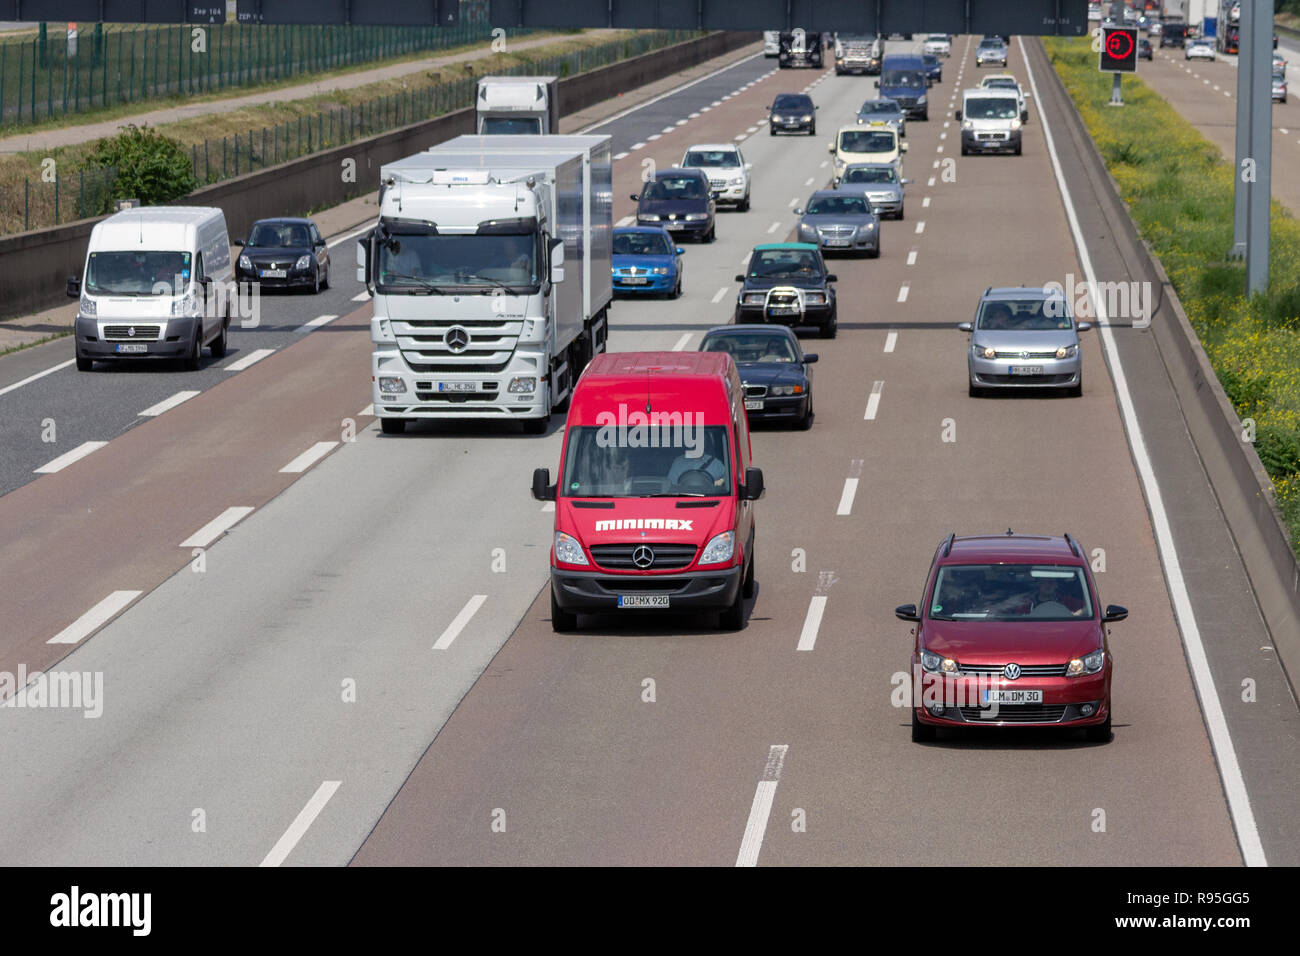 Francfort, Allemagne - 11 juillet 2013 : Le trafic sur une autoroute allemande. Autoroutes allemandes n'ont pas de rang général speedlimit et comme le cinquième plus longue autoroute sys Banque D'Images